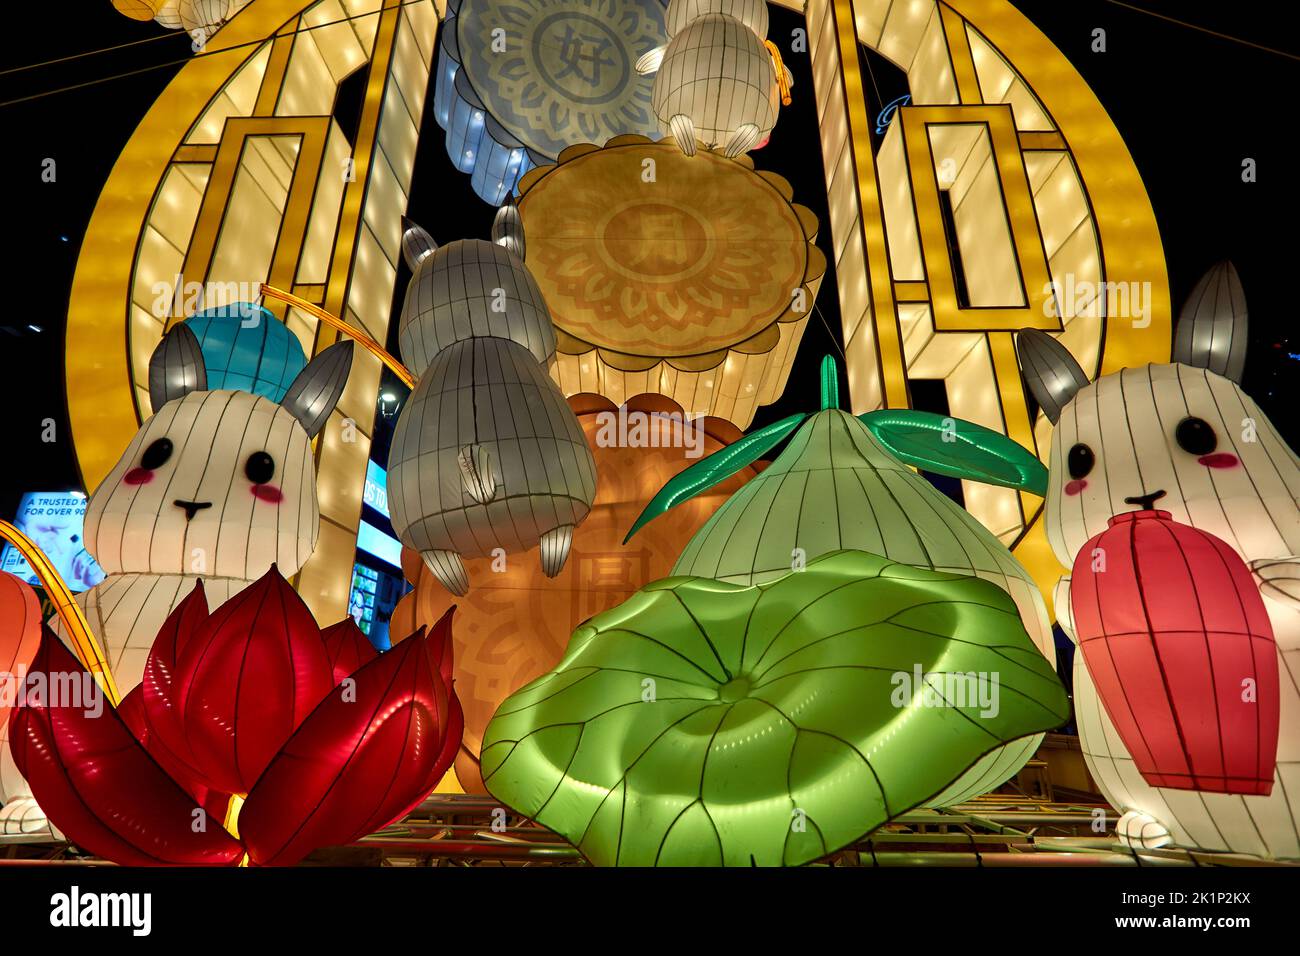 De grandes lanternes chinoises drôles dans le quartier chinois de Singapour lors du festival de la mi-automne Banque D'Images